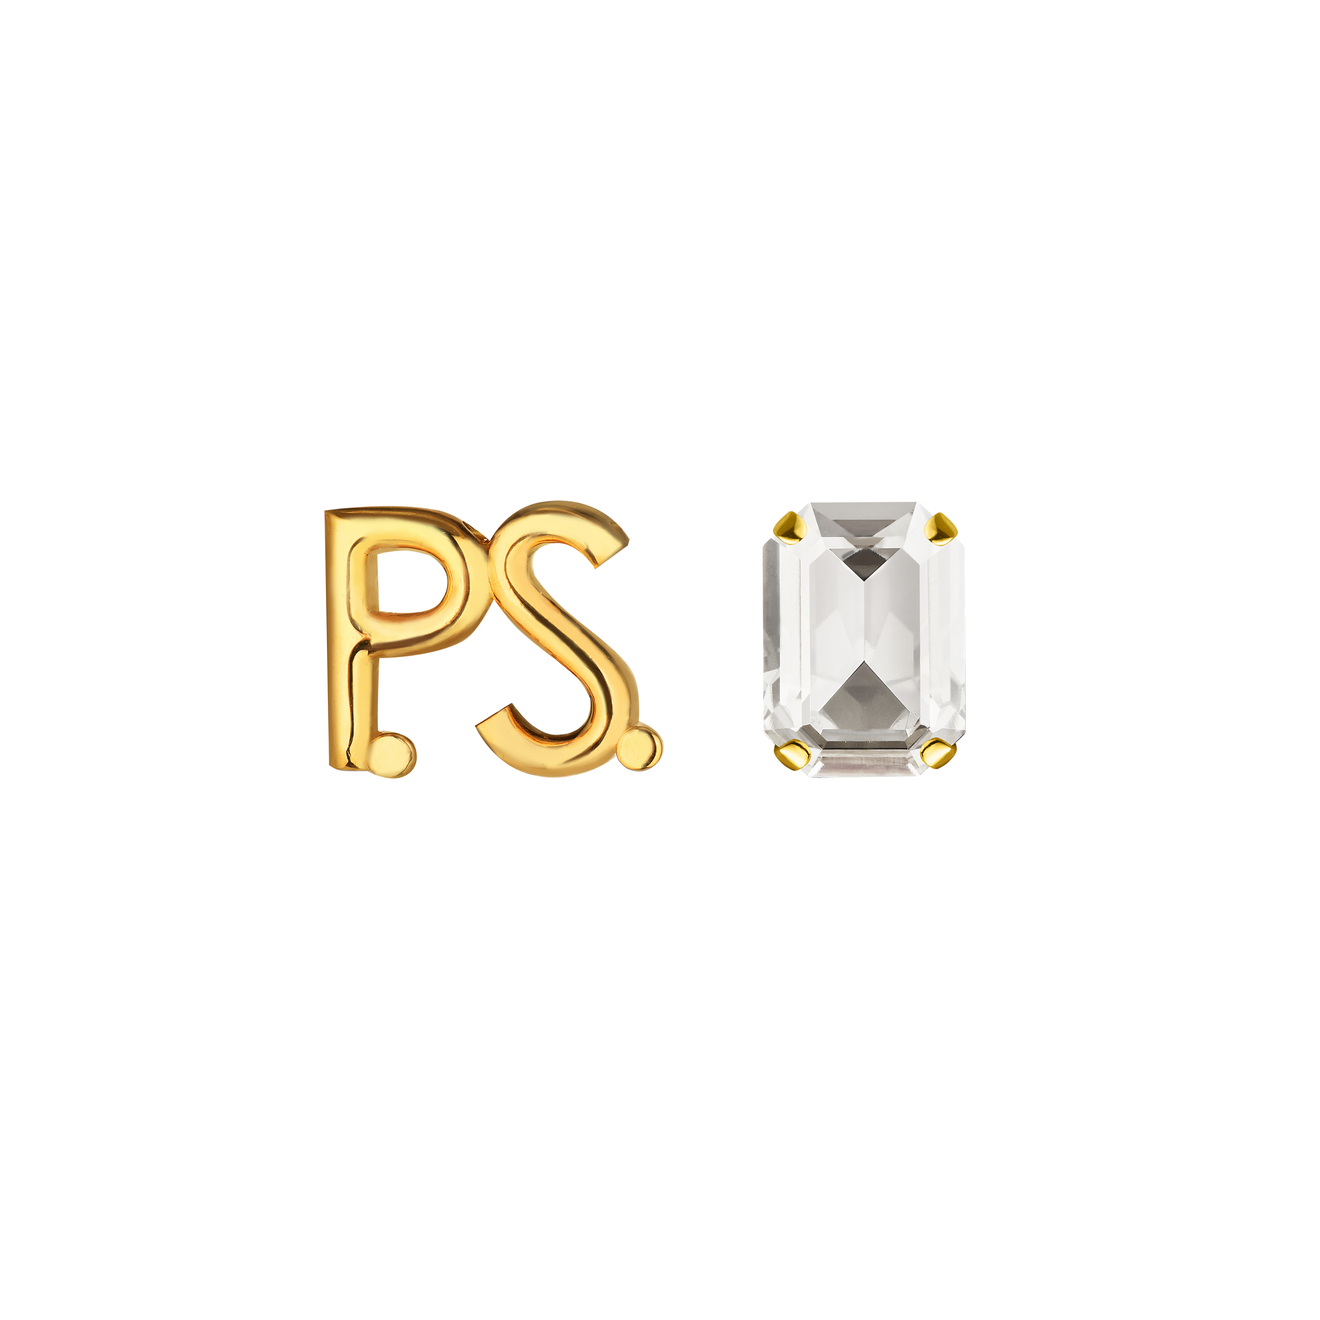 Phenomenal Studio Позолоченные серьги с фирменным логотипом и крупным кристаллом P.S. Crystal Gold